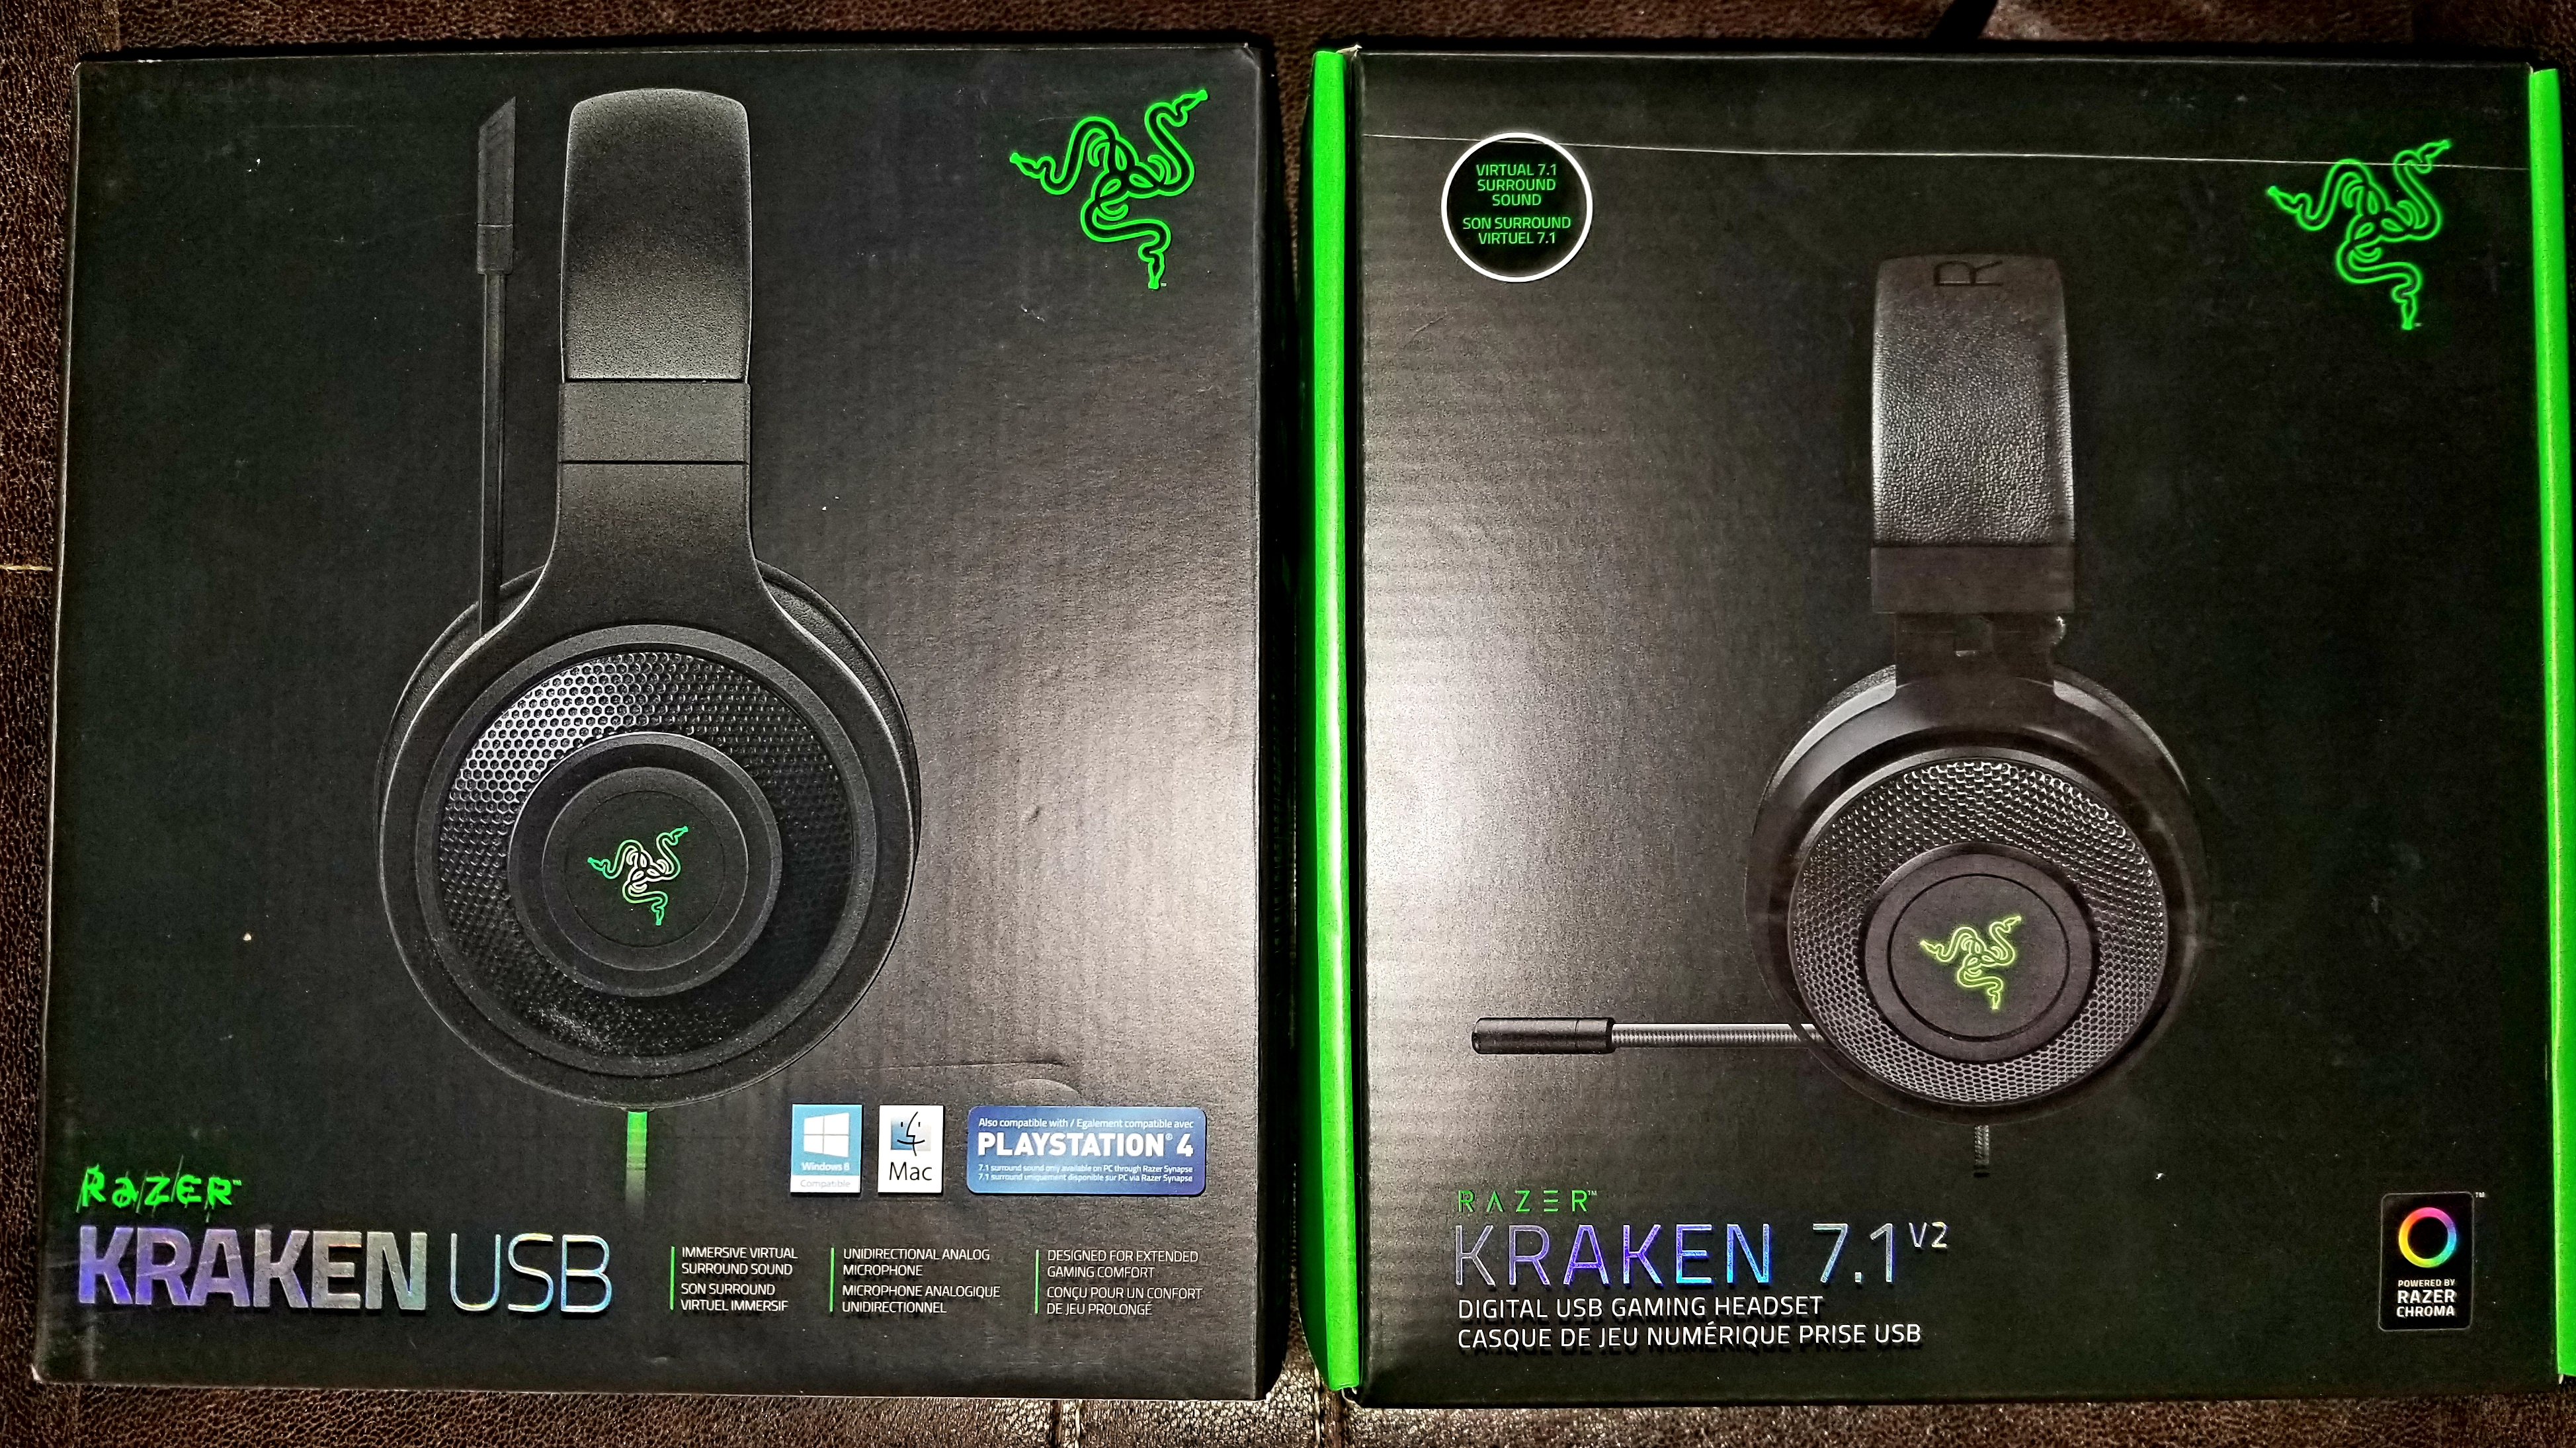 Razer Kraken USB vs. Razer Kraken 7.1 v2 Gaming Headsets